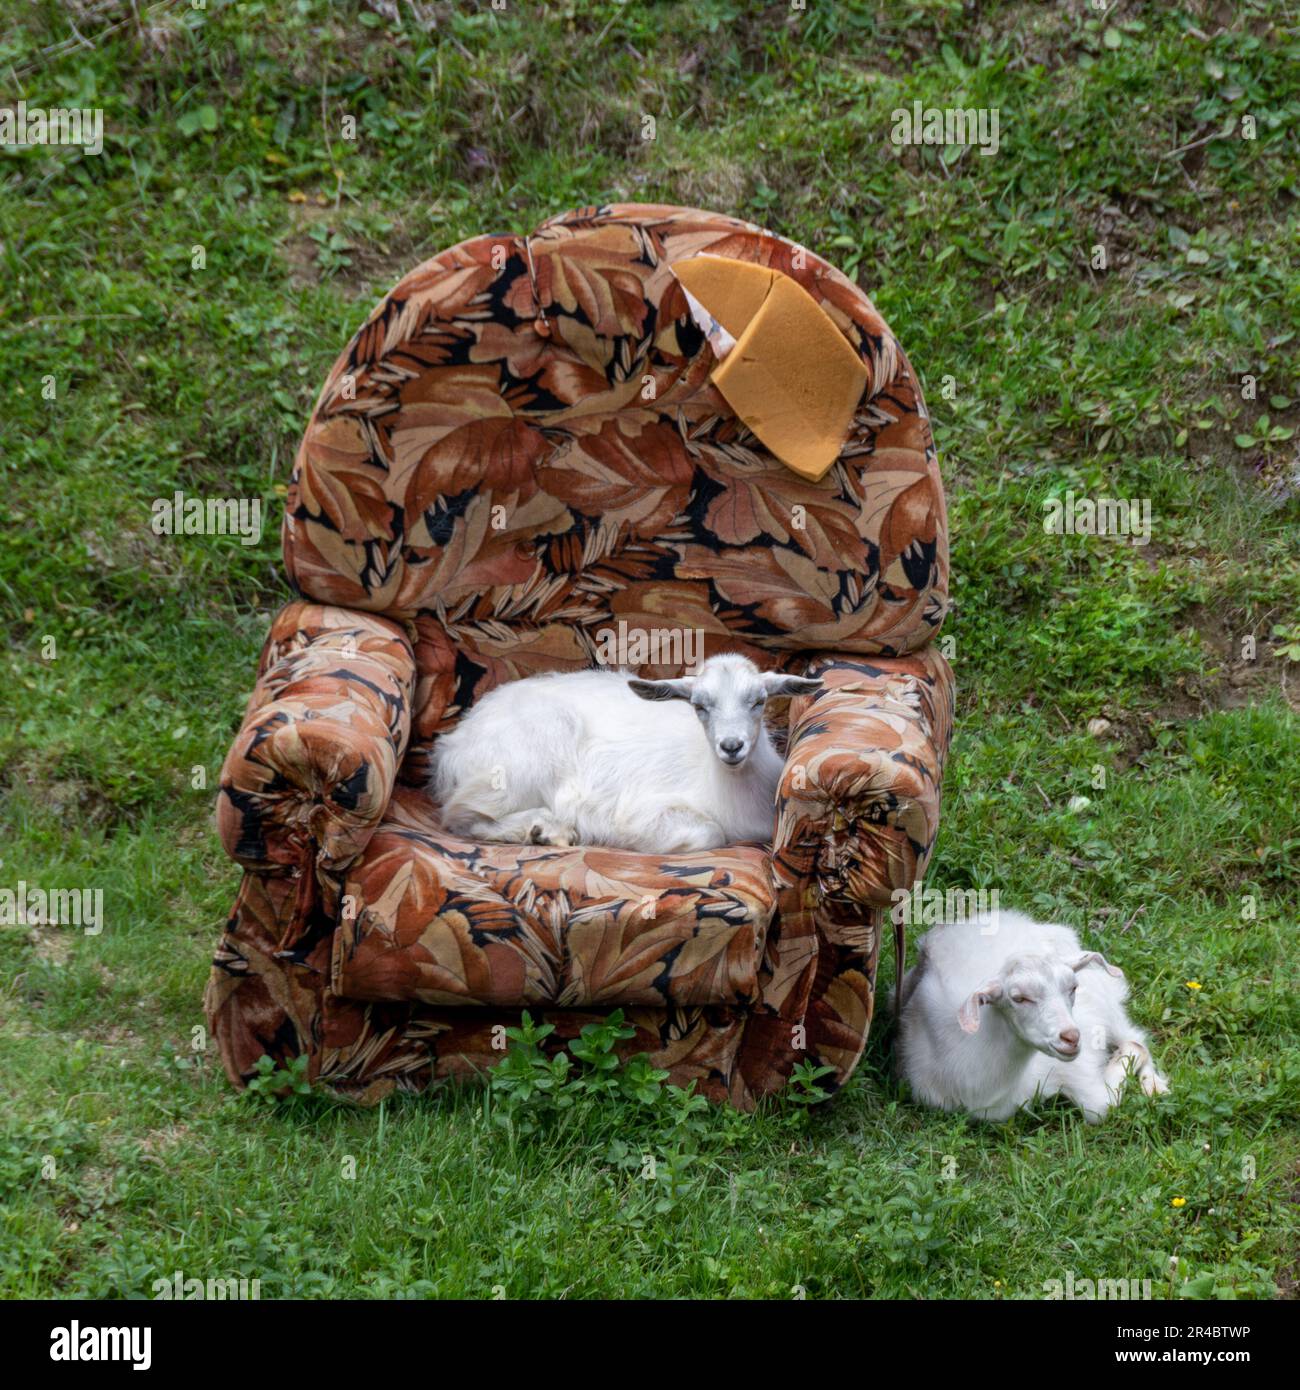 Zwei süße junge Ziegen mit einem alten Sessel auf einer Wiese. Seltsame, absurde und komische Situation auf dem Land Stockfoto